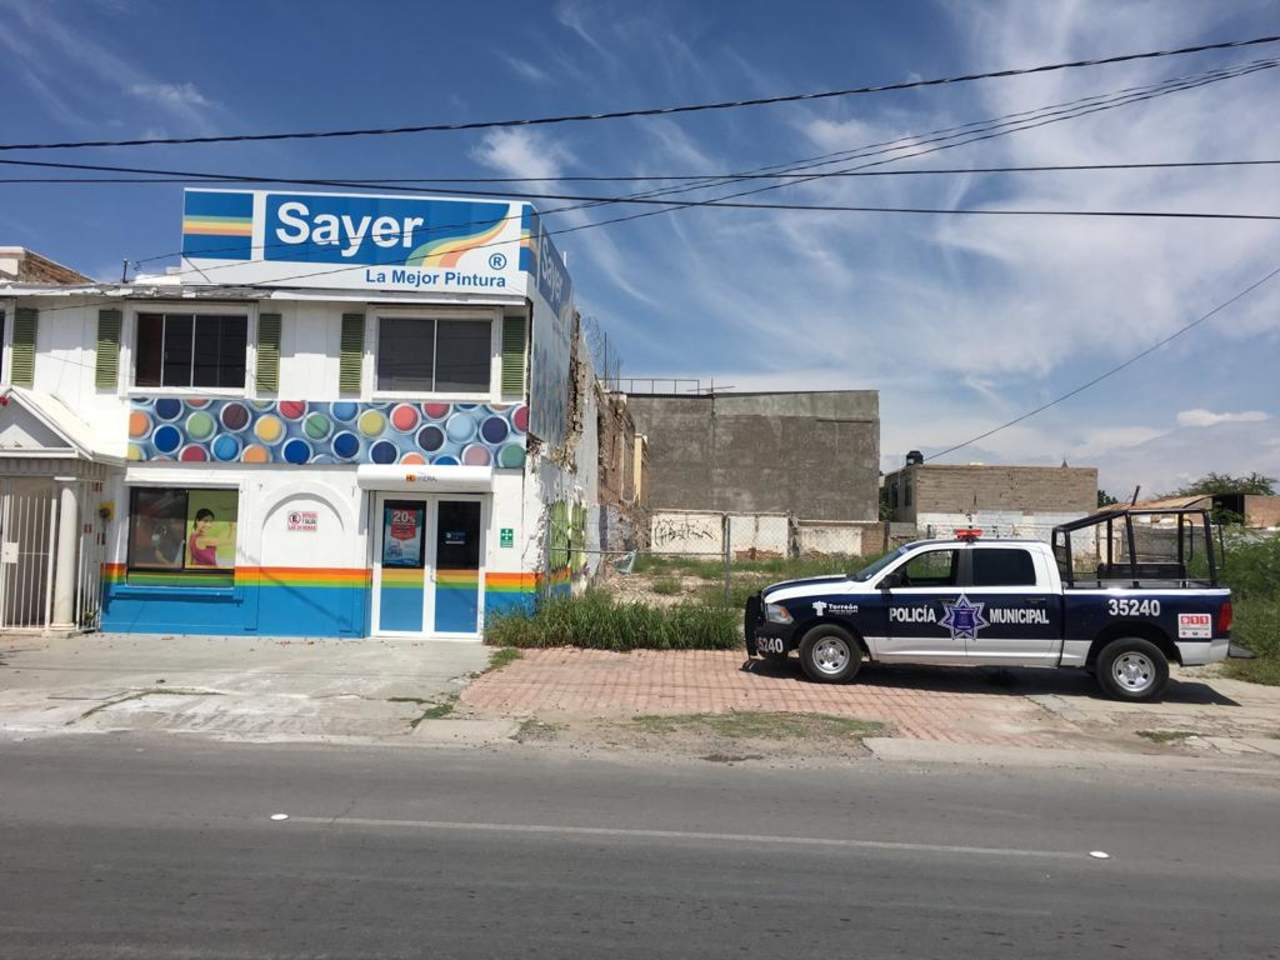 Asaltan con violencia negocio de pinturas en Torreón